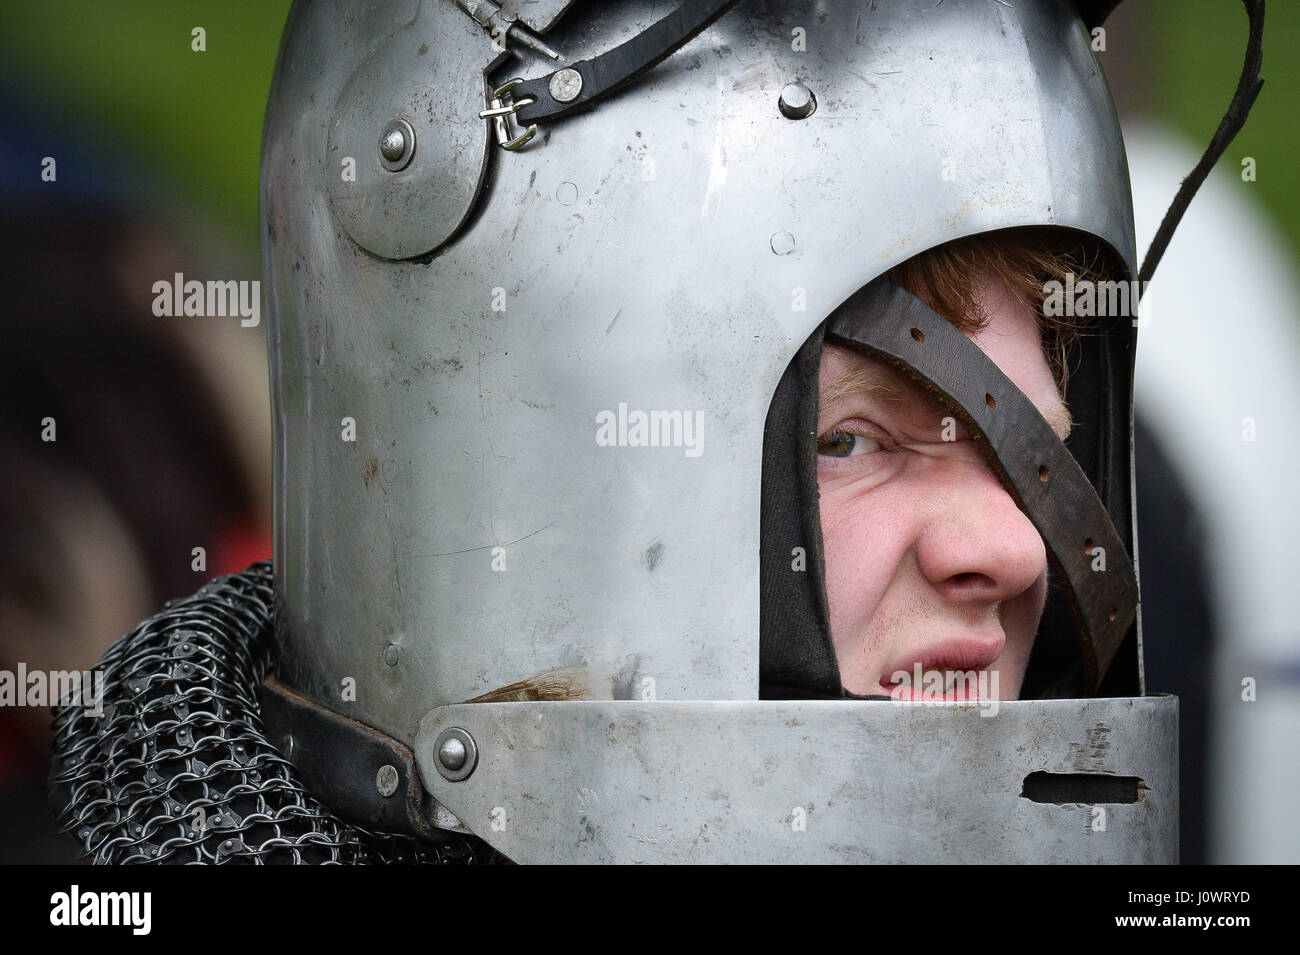 Ein Mann kämpft setzen auf seinem Helm in Vorbereitung auf einen Kampf der mittelalterlichen Glastonbury Wochenende, Abtei von Glastonbury, Somerset. Stockfoto